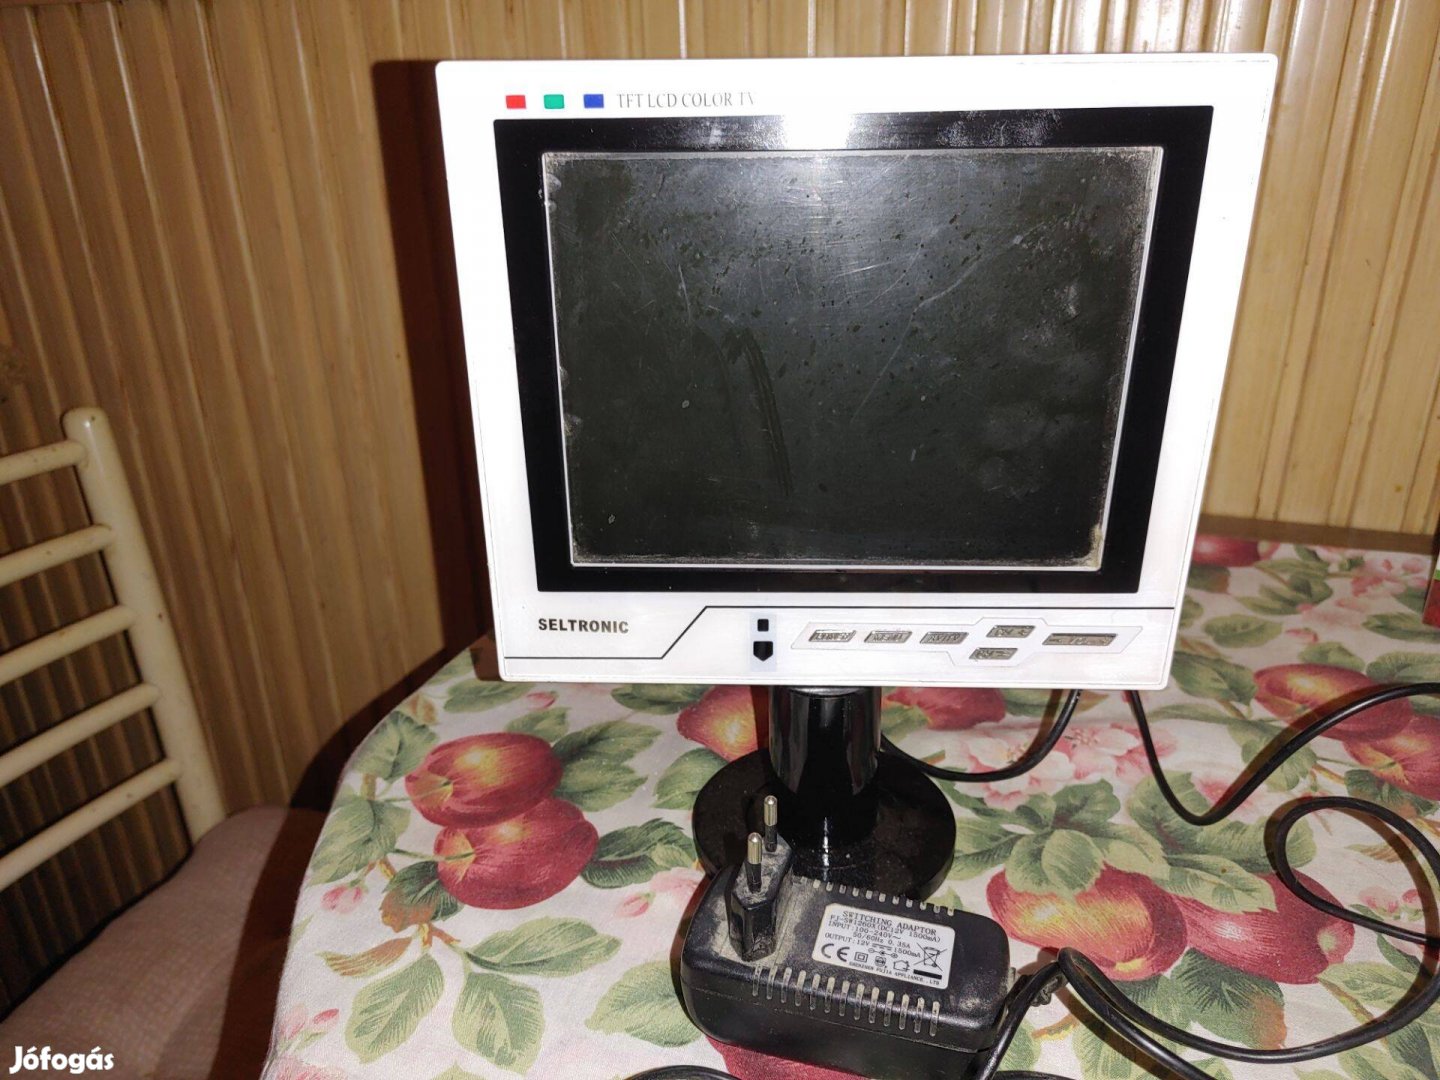 LCD TV/TFT Monitor